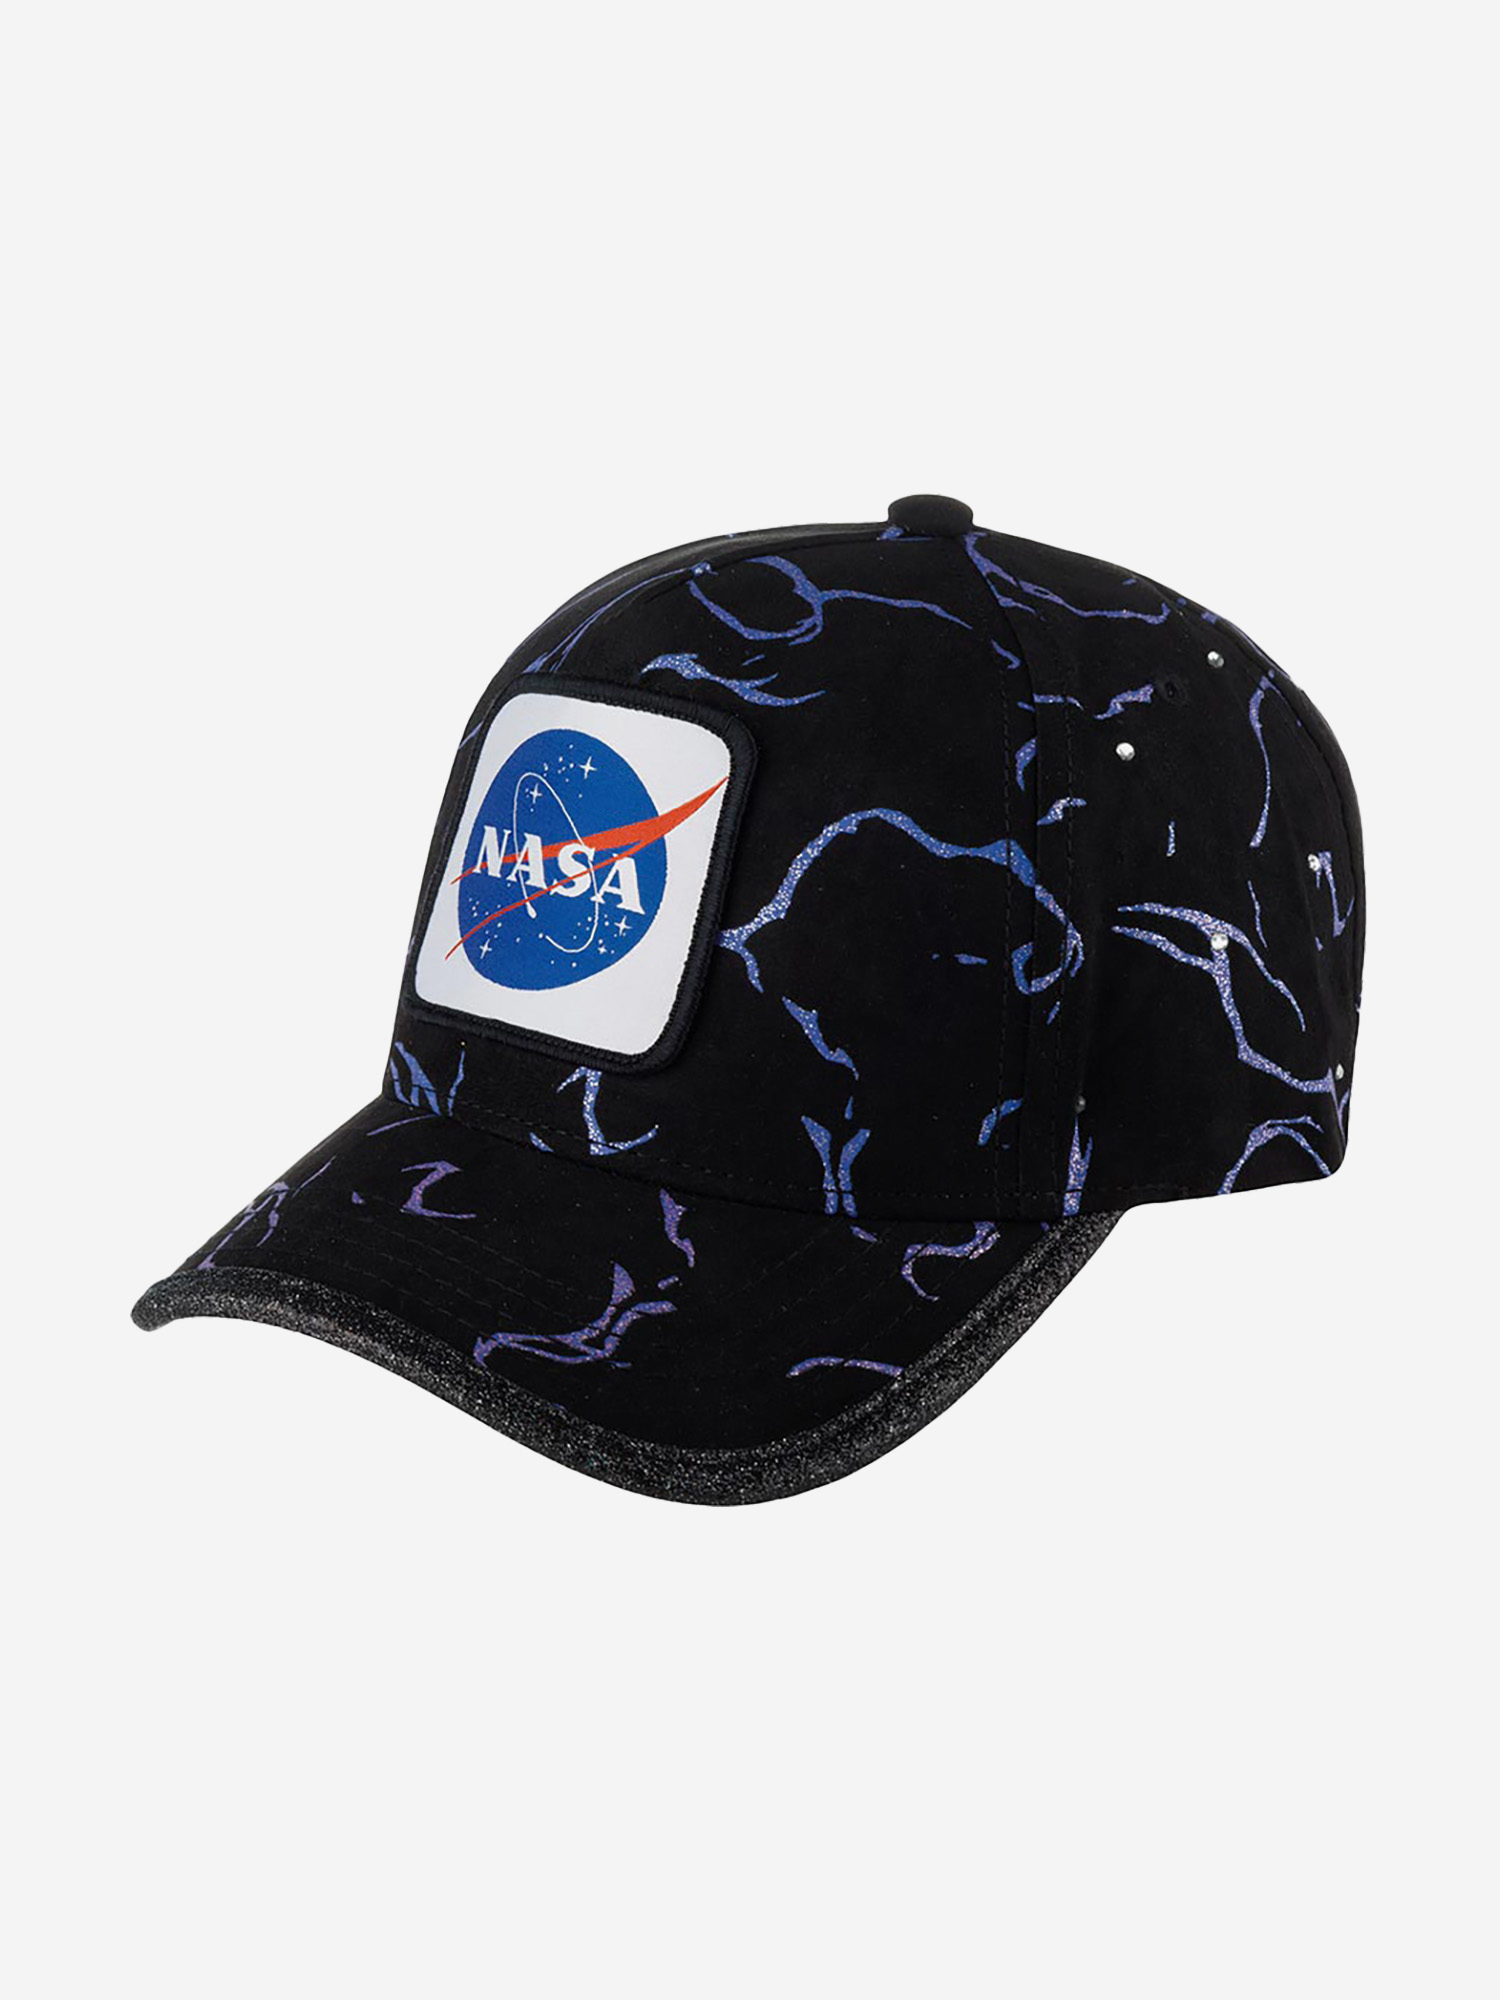 Бейсболка CAPSLAB CL/NASA/1/TAG/GLI NASA (черный), Черный